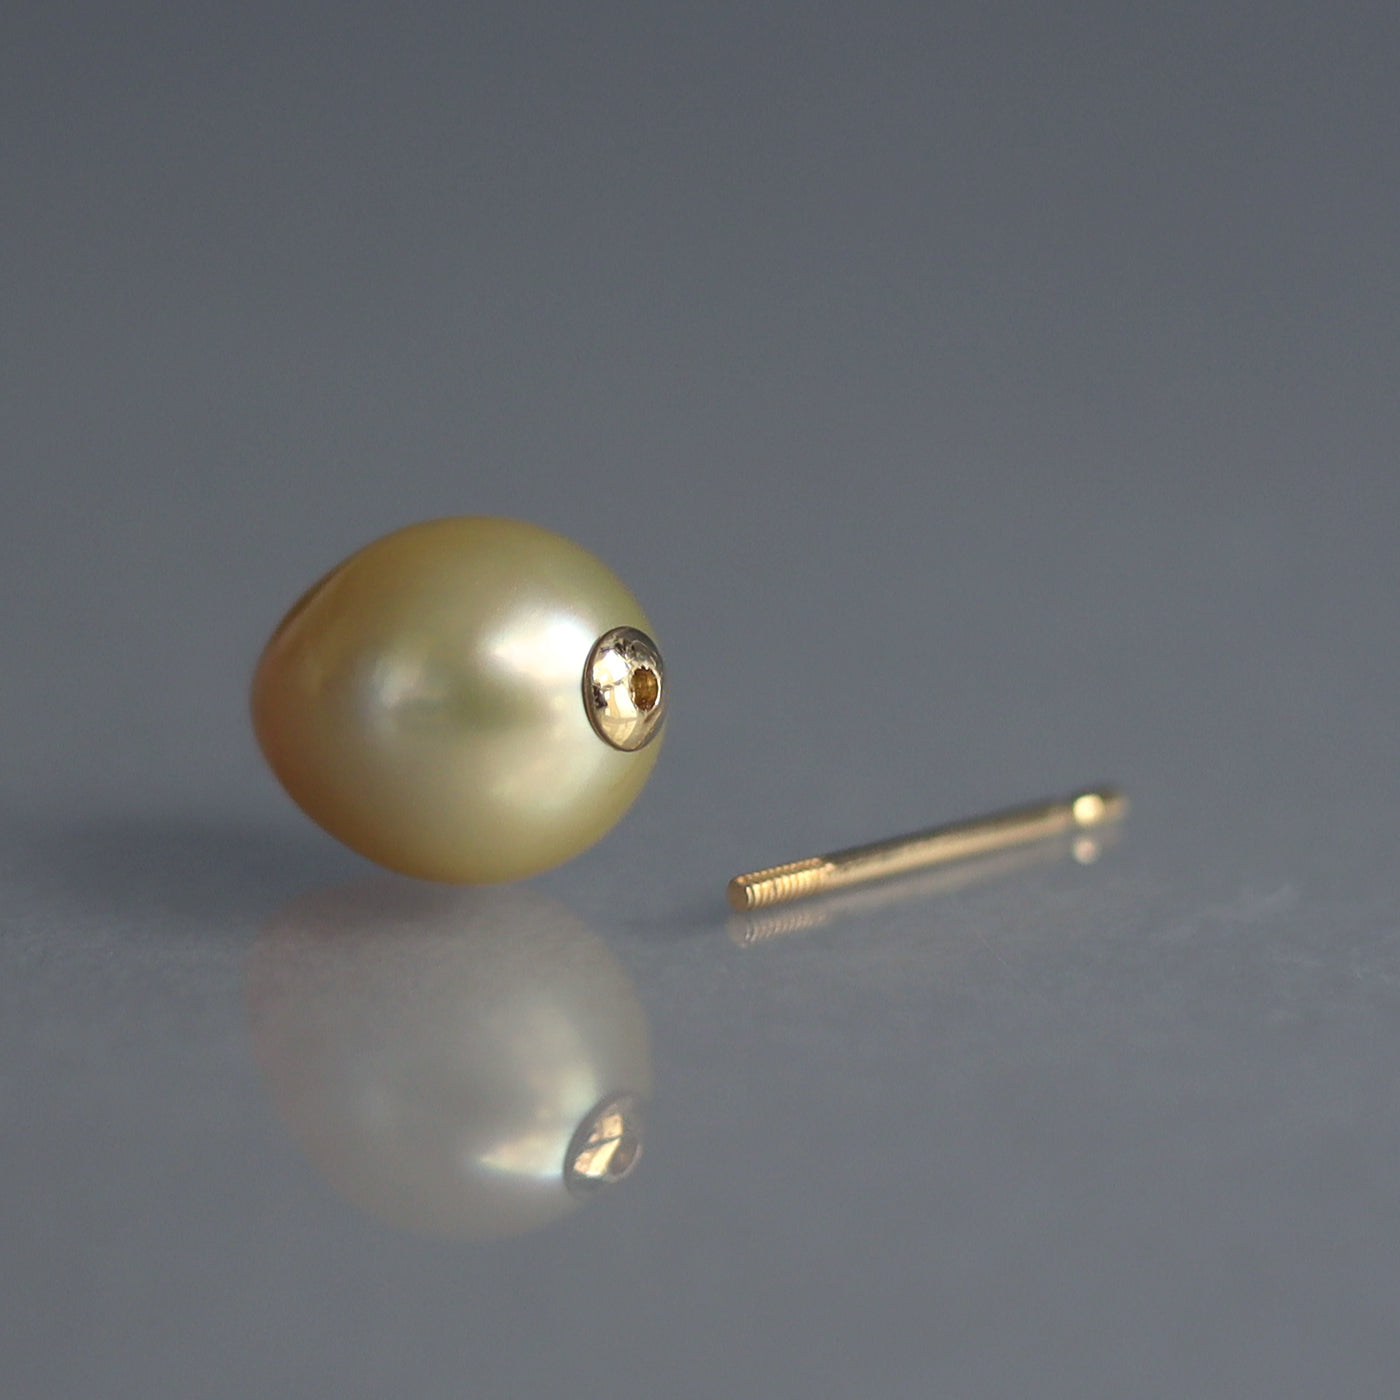 【COLLECTIBLE】Golden South Sea Pearl (No. CG3935)